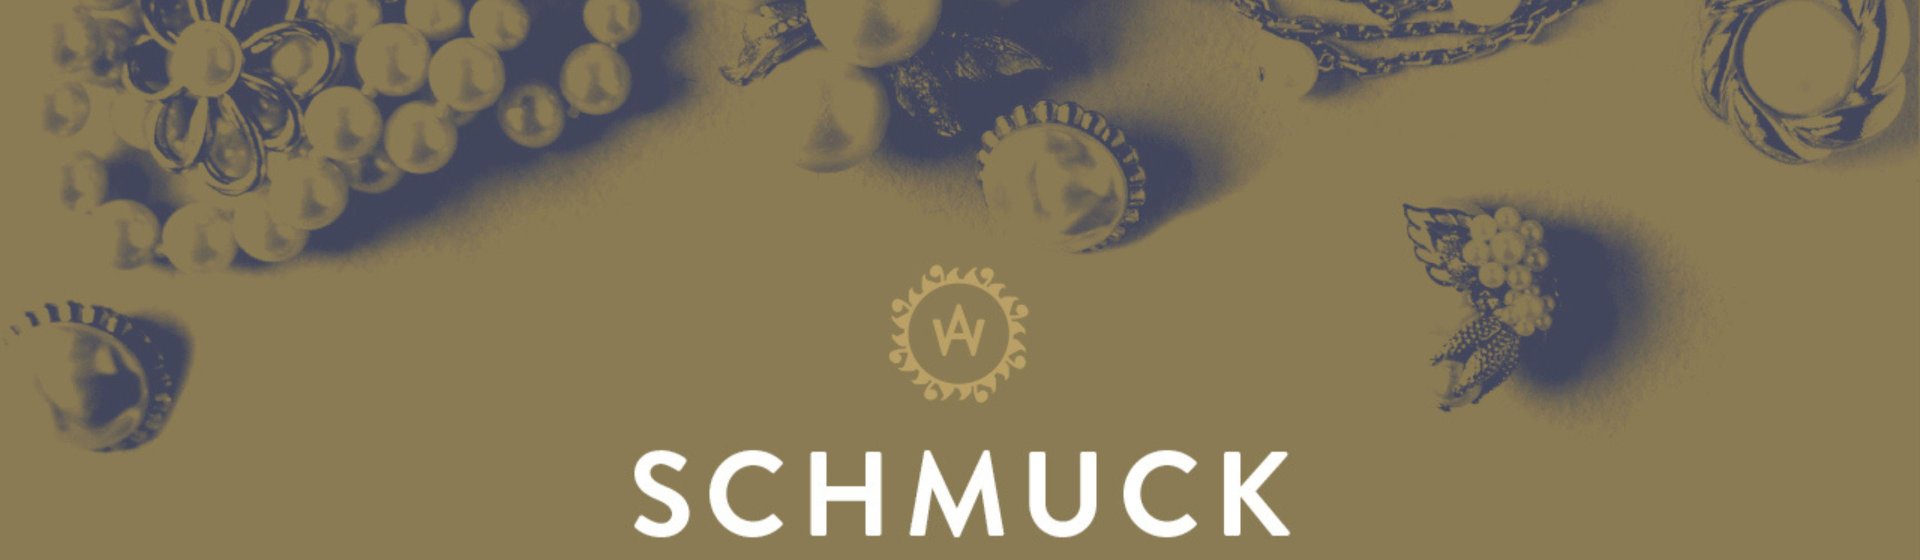 Preowned Schmuck JuwelierWeber 3840x1120px